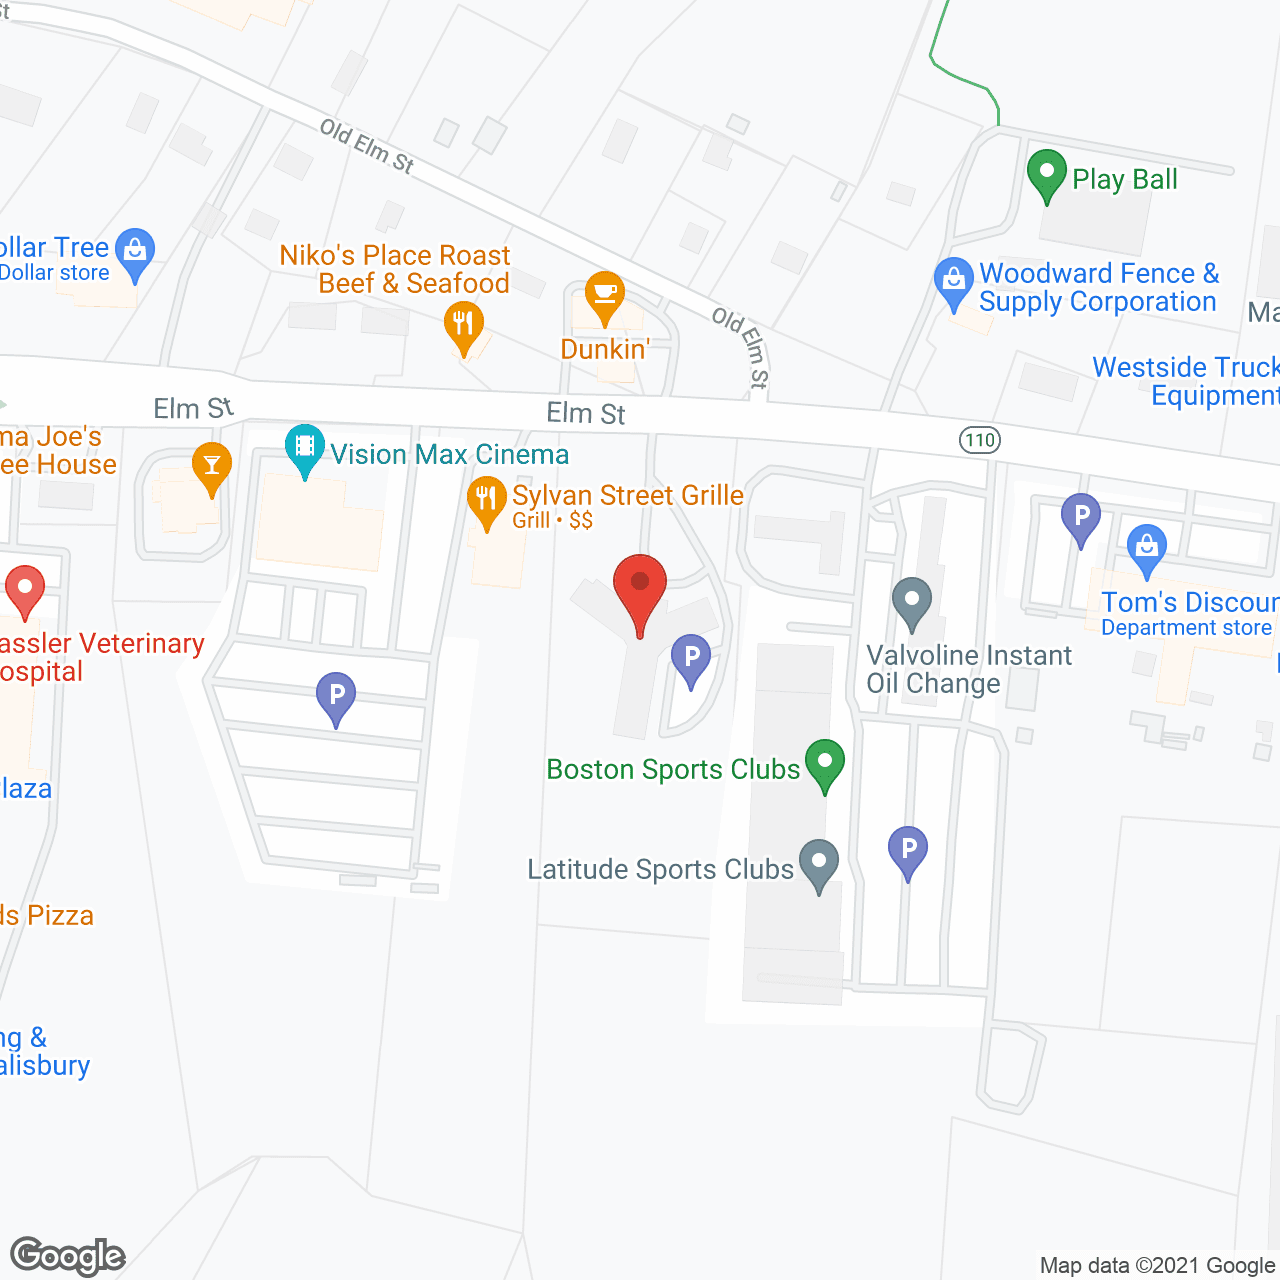 Greenleaf House Nursing Home in google map